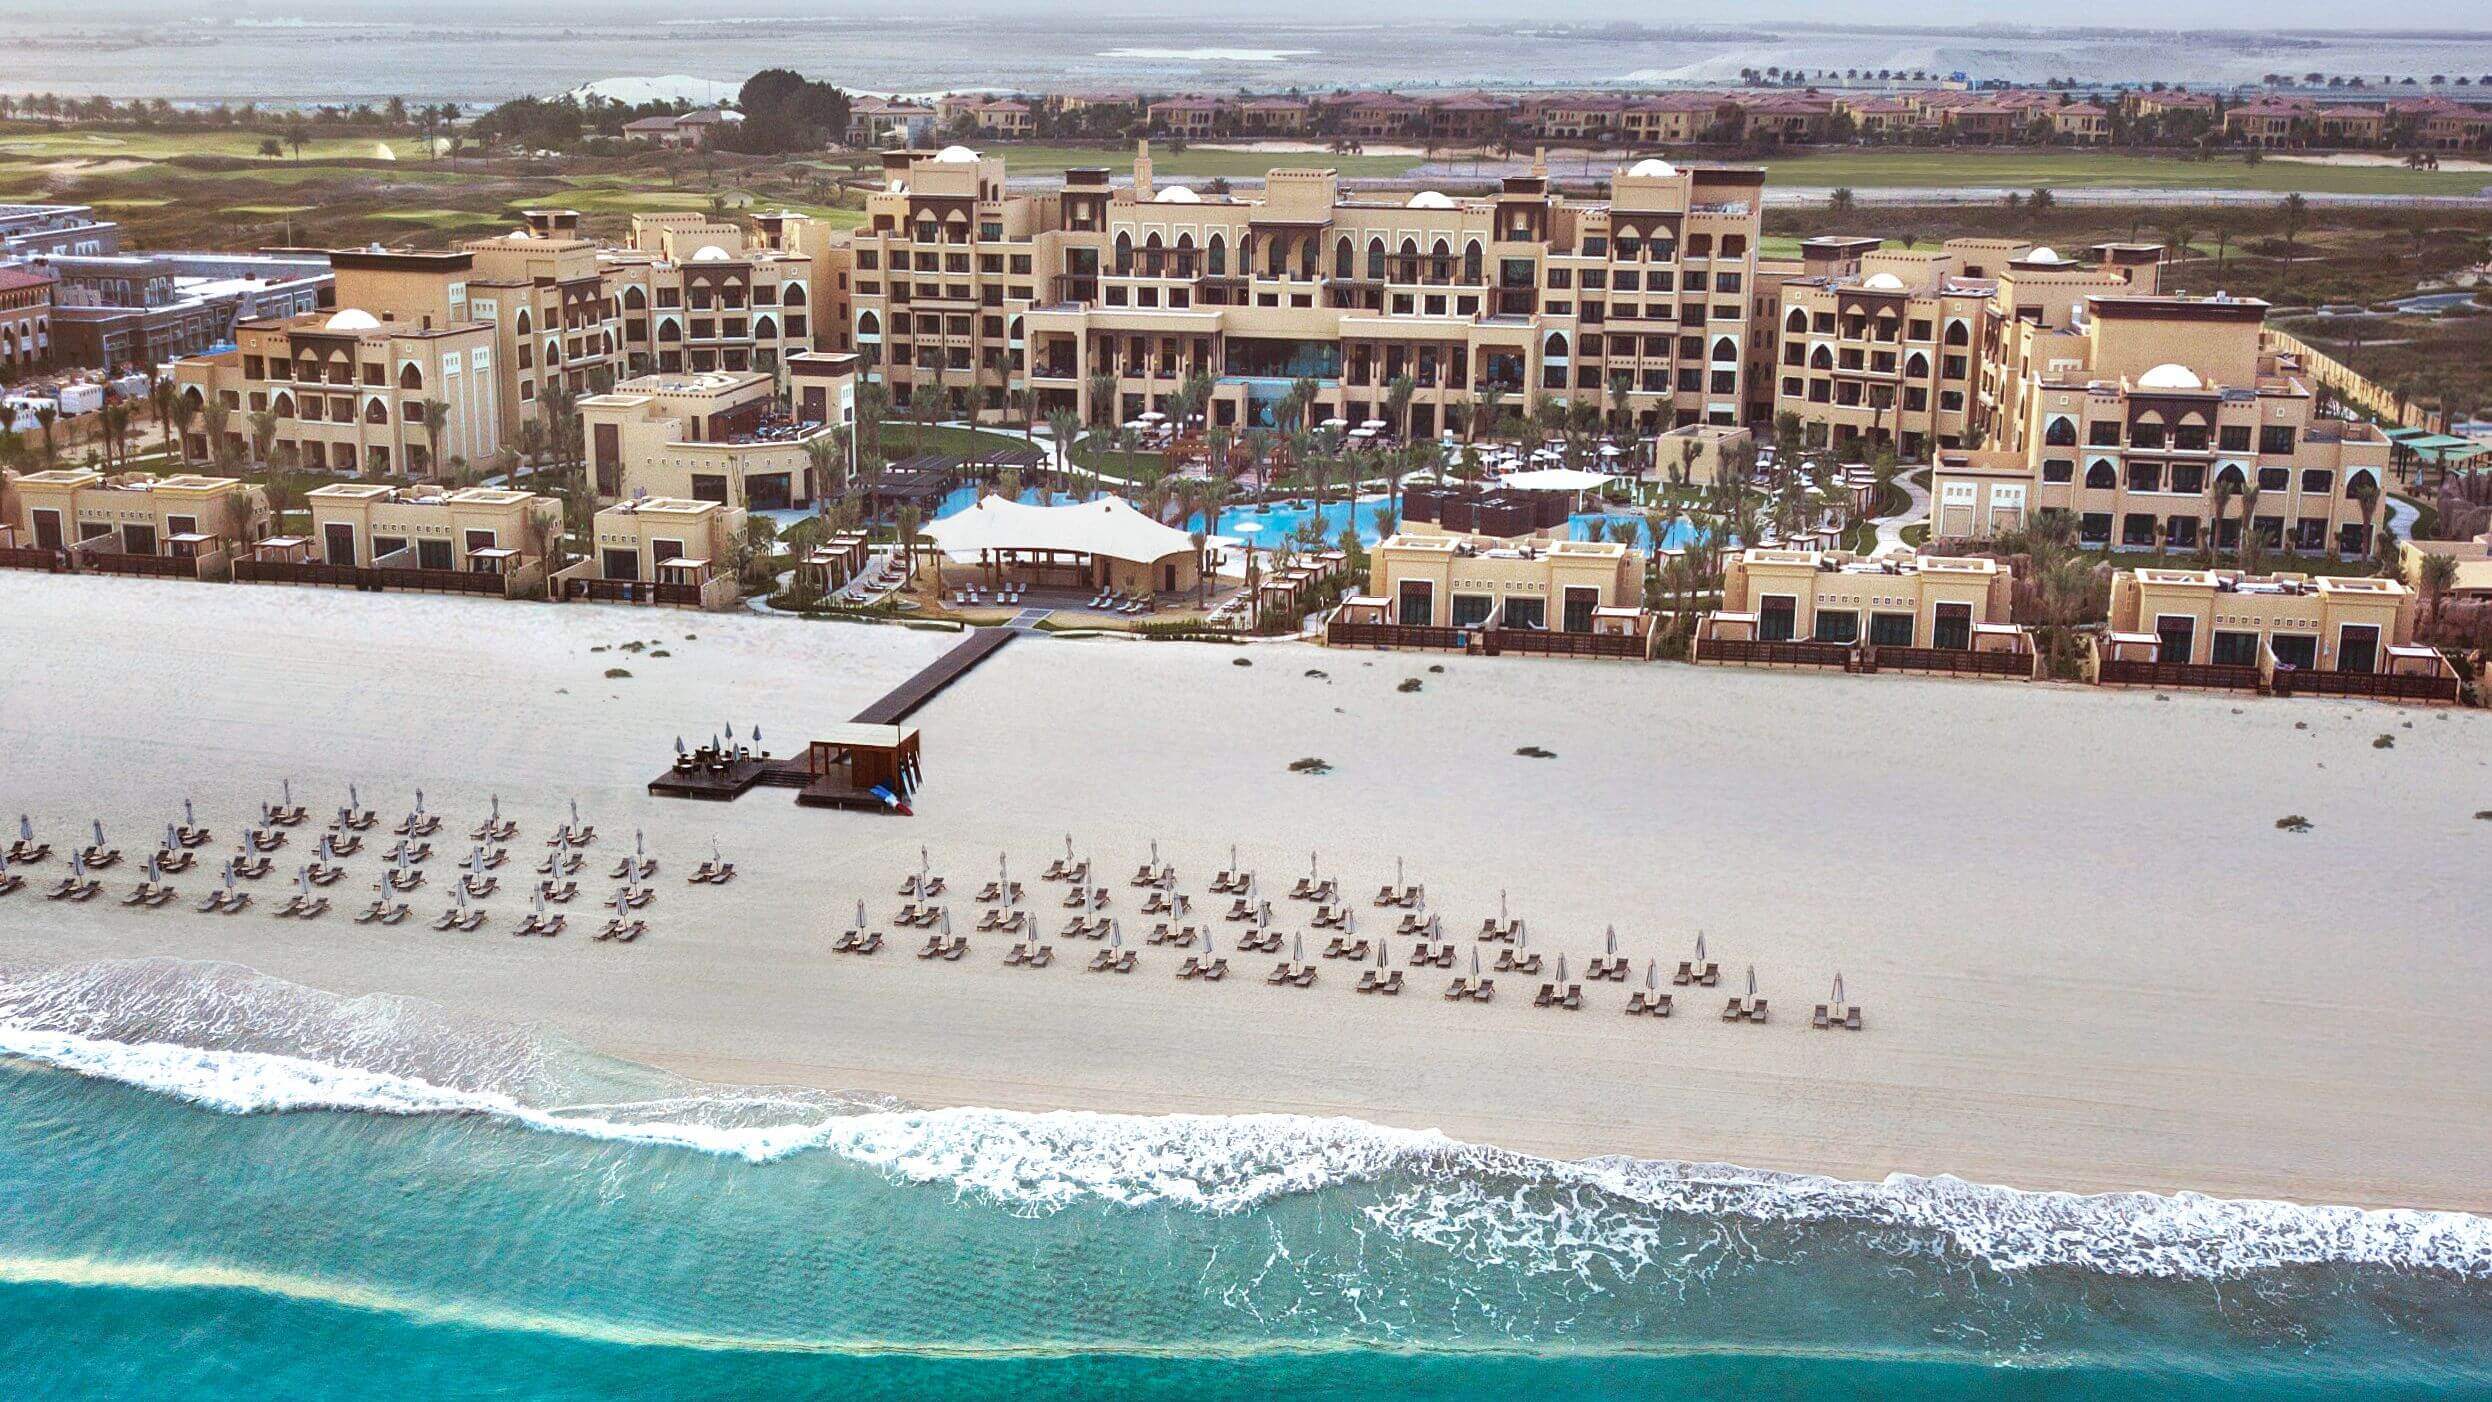 Abu Dhabi Saadiyat Rotana Resort & Villas *****